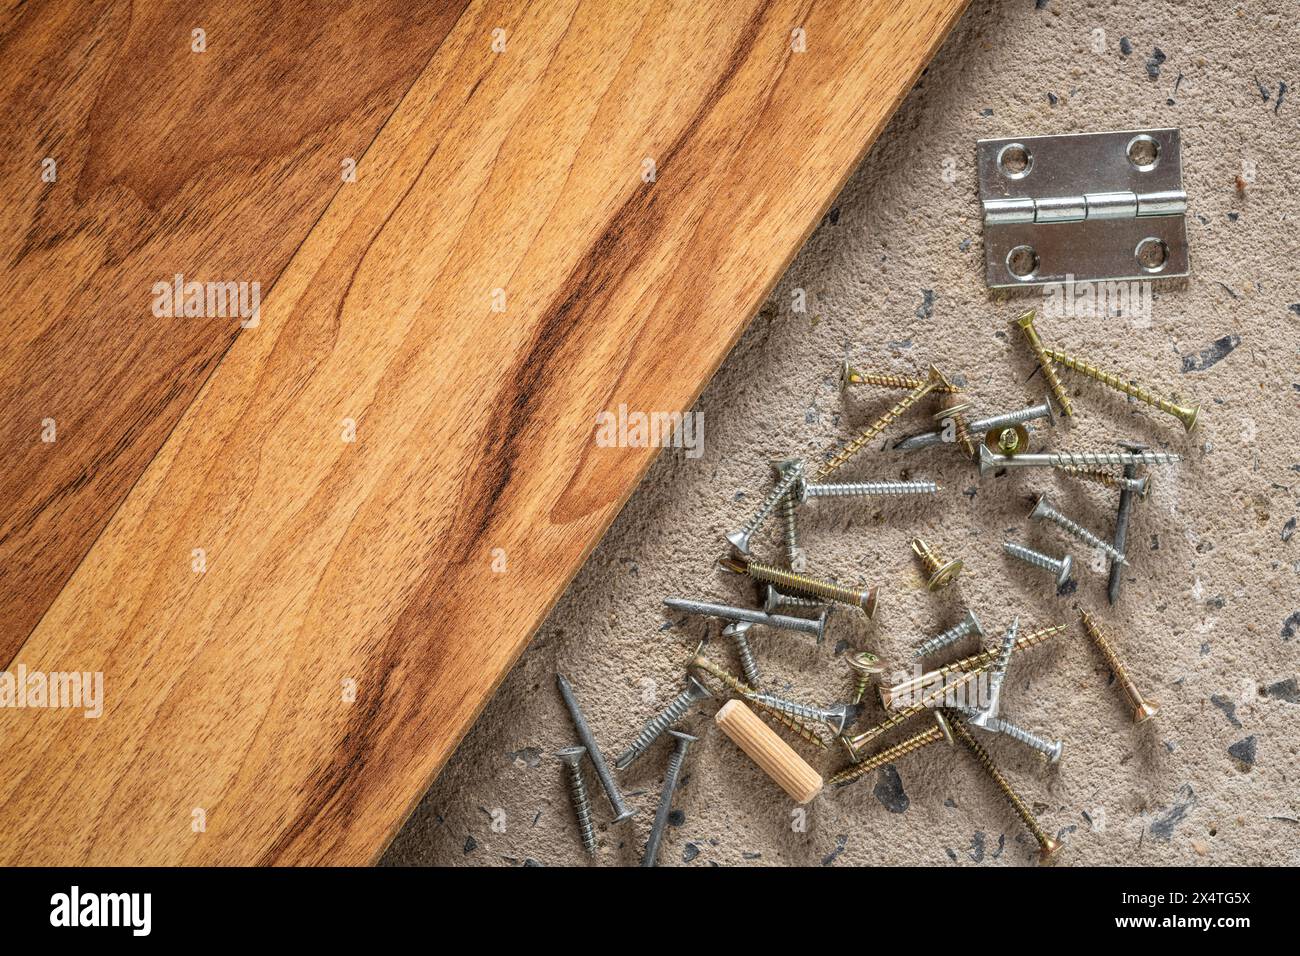 Schraube, Nagel auf Beton Holz Textur Hintergrund. Nahaufnahme von Schrauben und Nägeln auf Zement- und Holzboden mit Kopierraum. Stockfoto